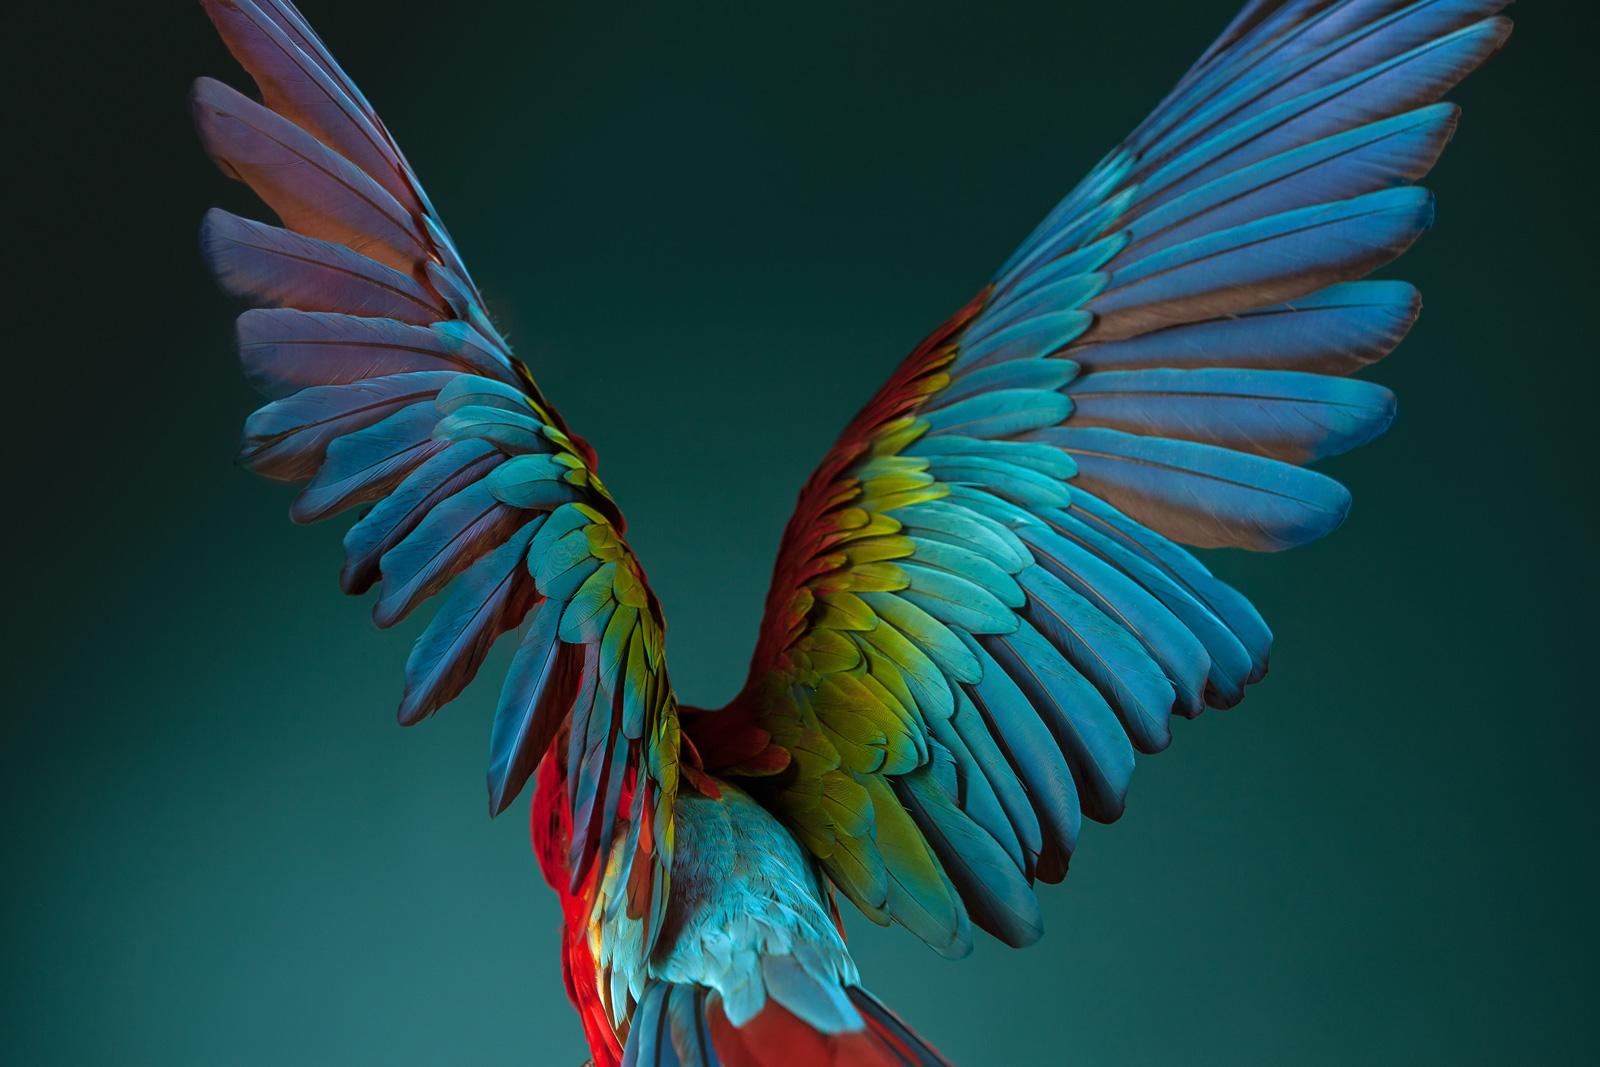 Still-Life Photograph Tim Platt - "Macaw #3 - Impression de nature morte en édition limitée signée, oiseau bleu, animalier, contemporain